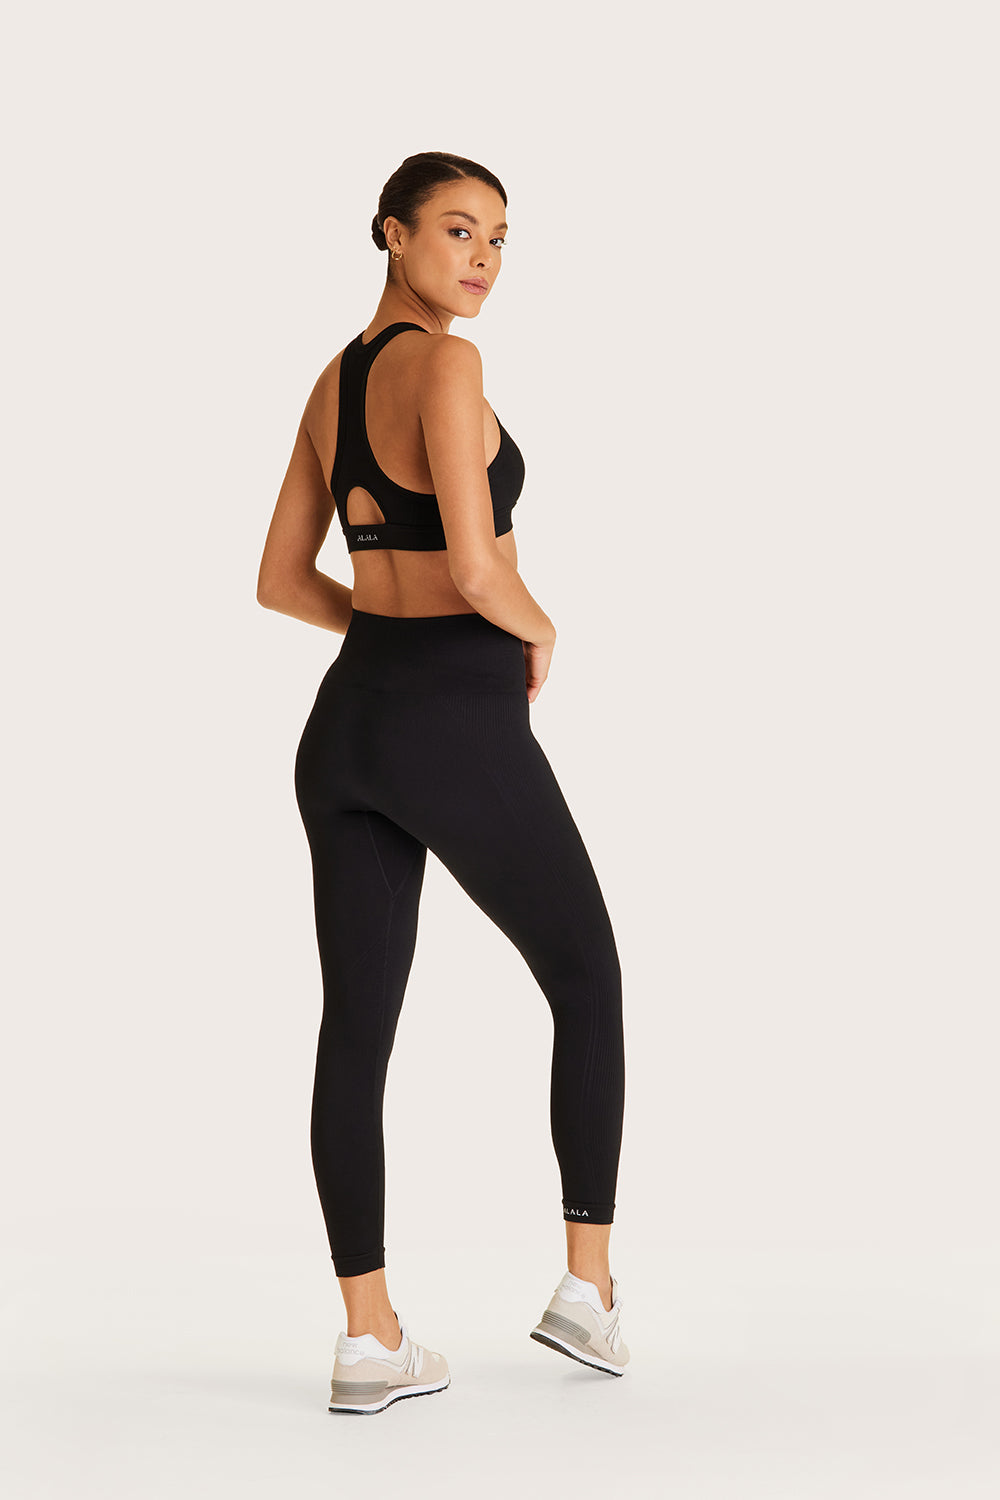 Alala women's 7/8 length seamless legging in black